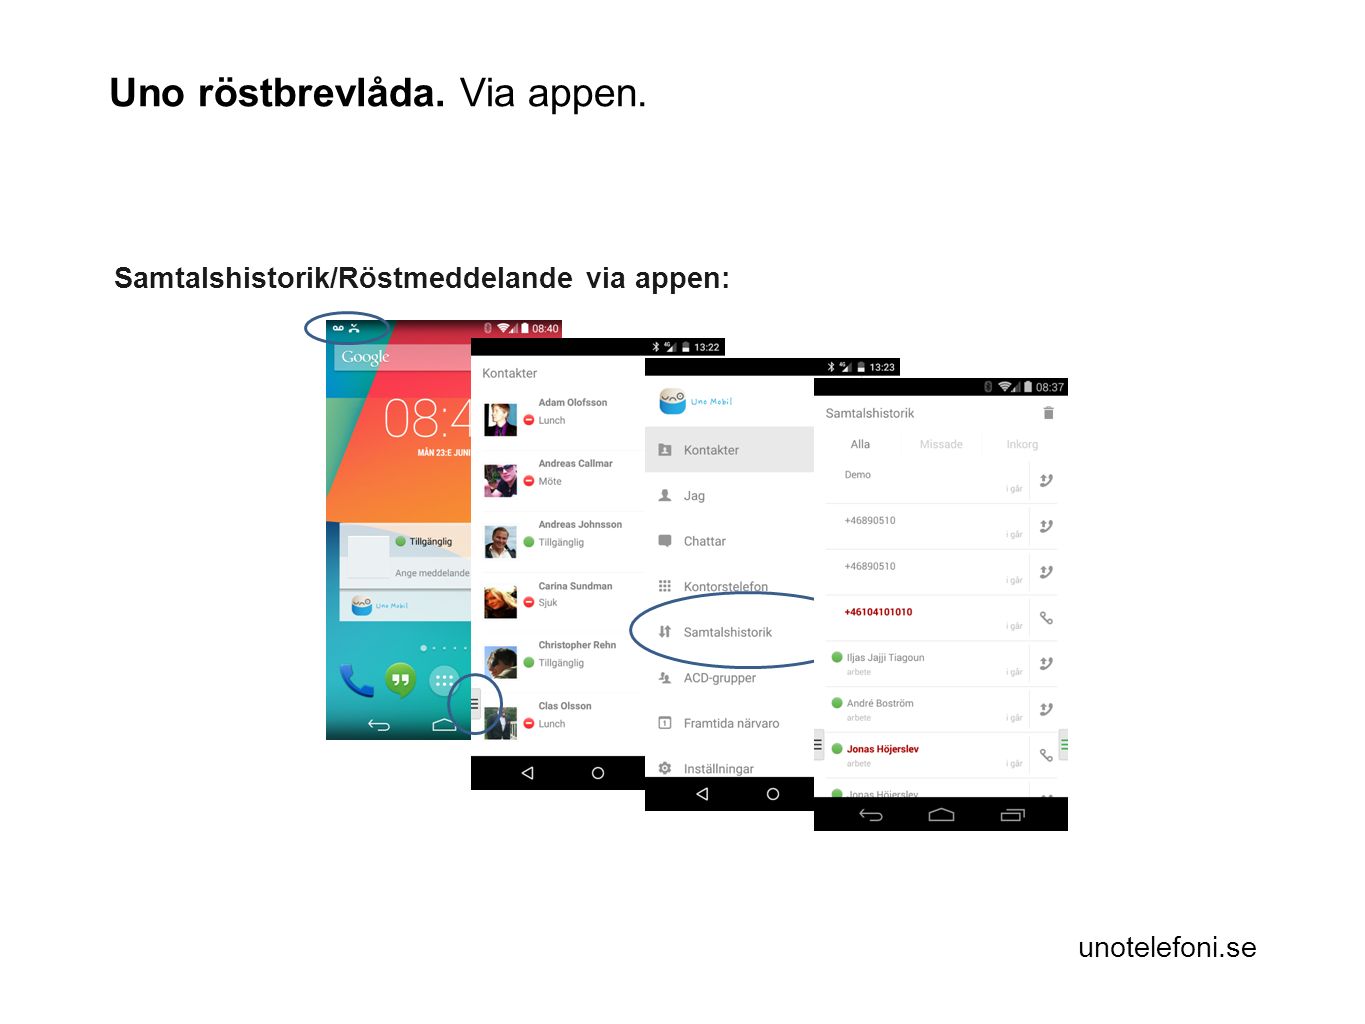 unotelefoni.se Samtalshistorik/Röstmeddelande via appen: Uno röstbrevlåda. Via appen.